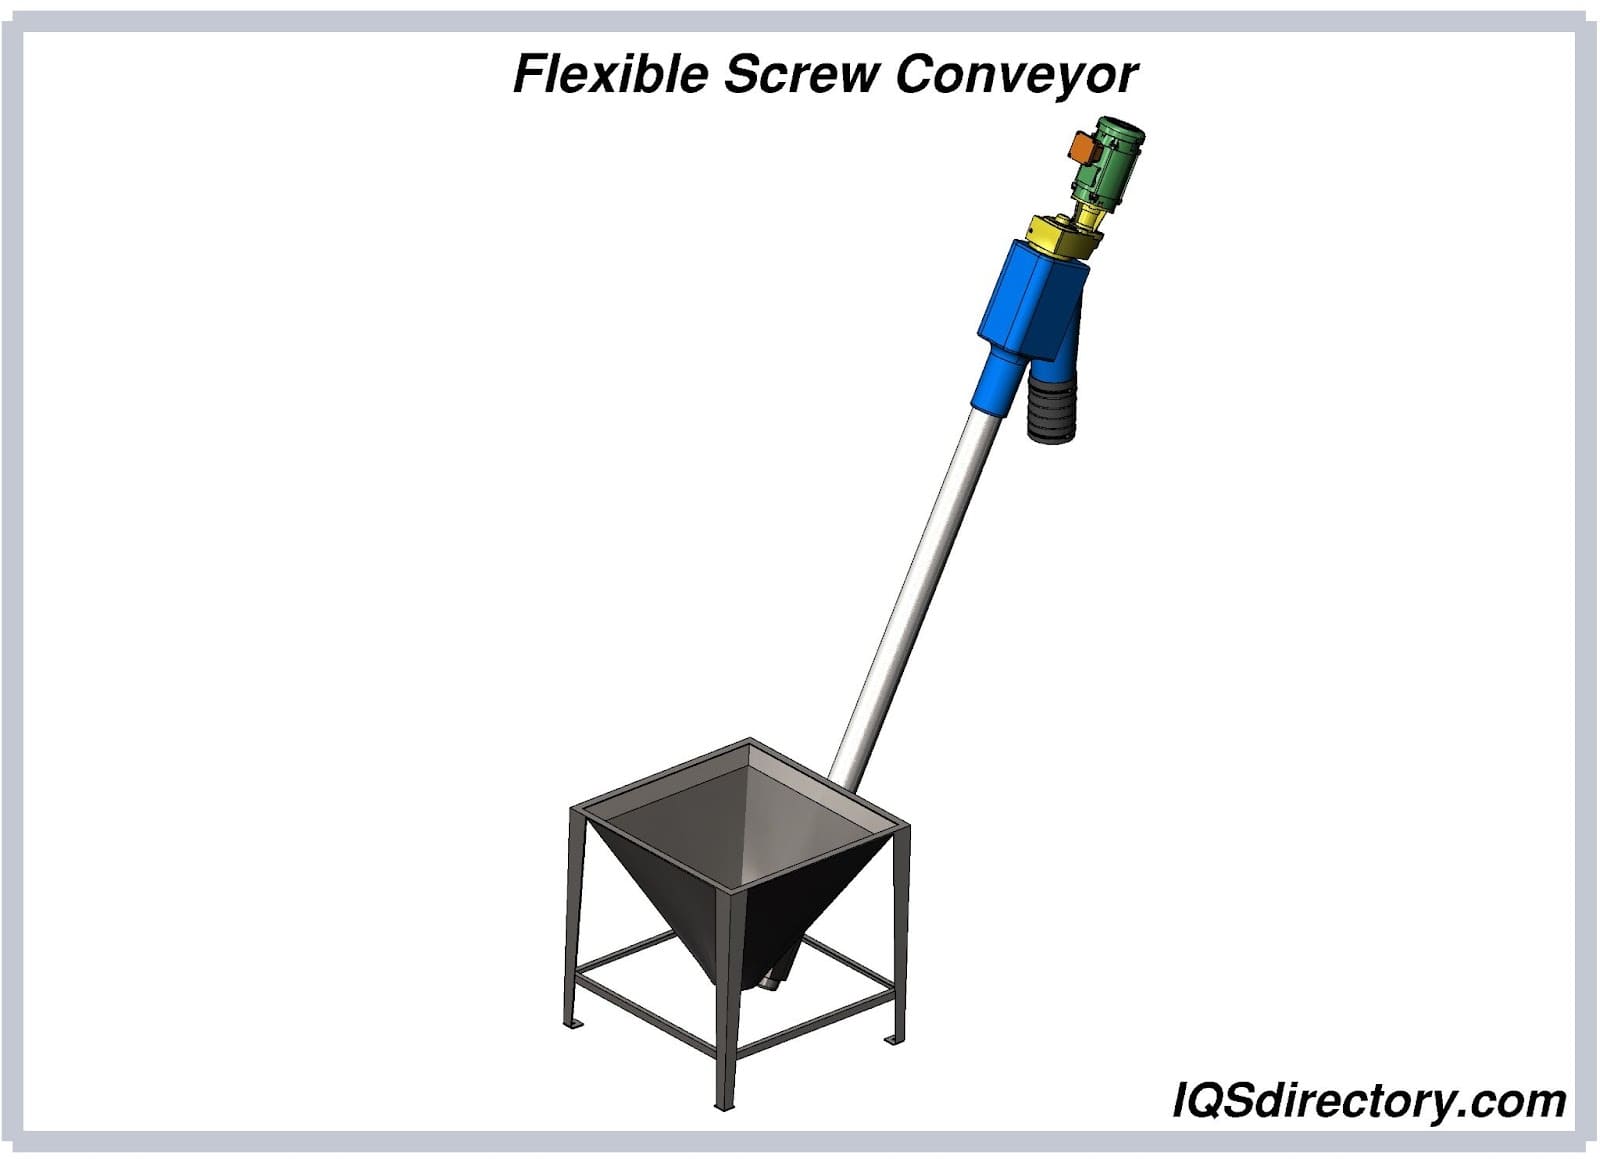 Flexible Screw Conveyor